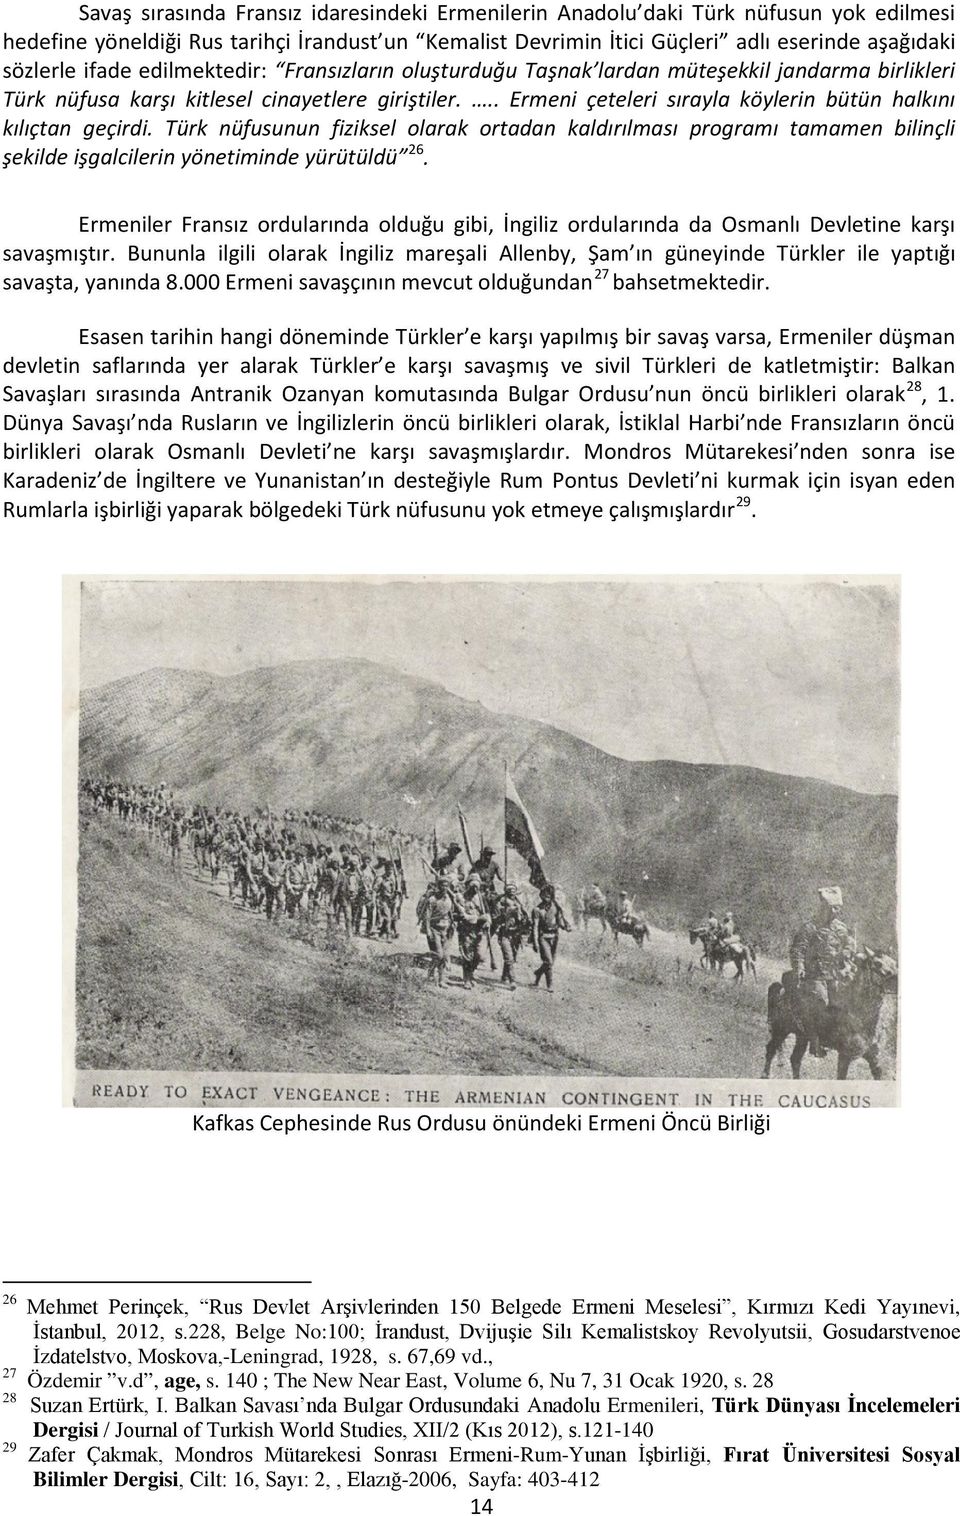 .. Ermeni çeteleri sırayla köylerin bütün halkını kılıçtan geçirdi. Türk nüfusunun fiziksel olarak ortadan kaldırılması programı tamamen bilinçli şekilde işgalcilerin yönetiminde yürütüldü 26.